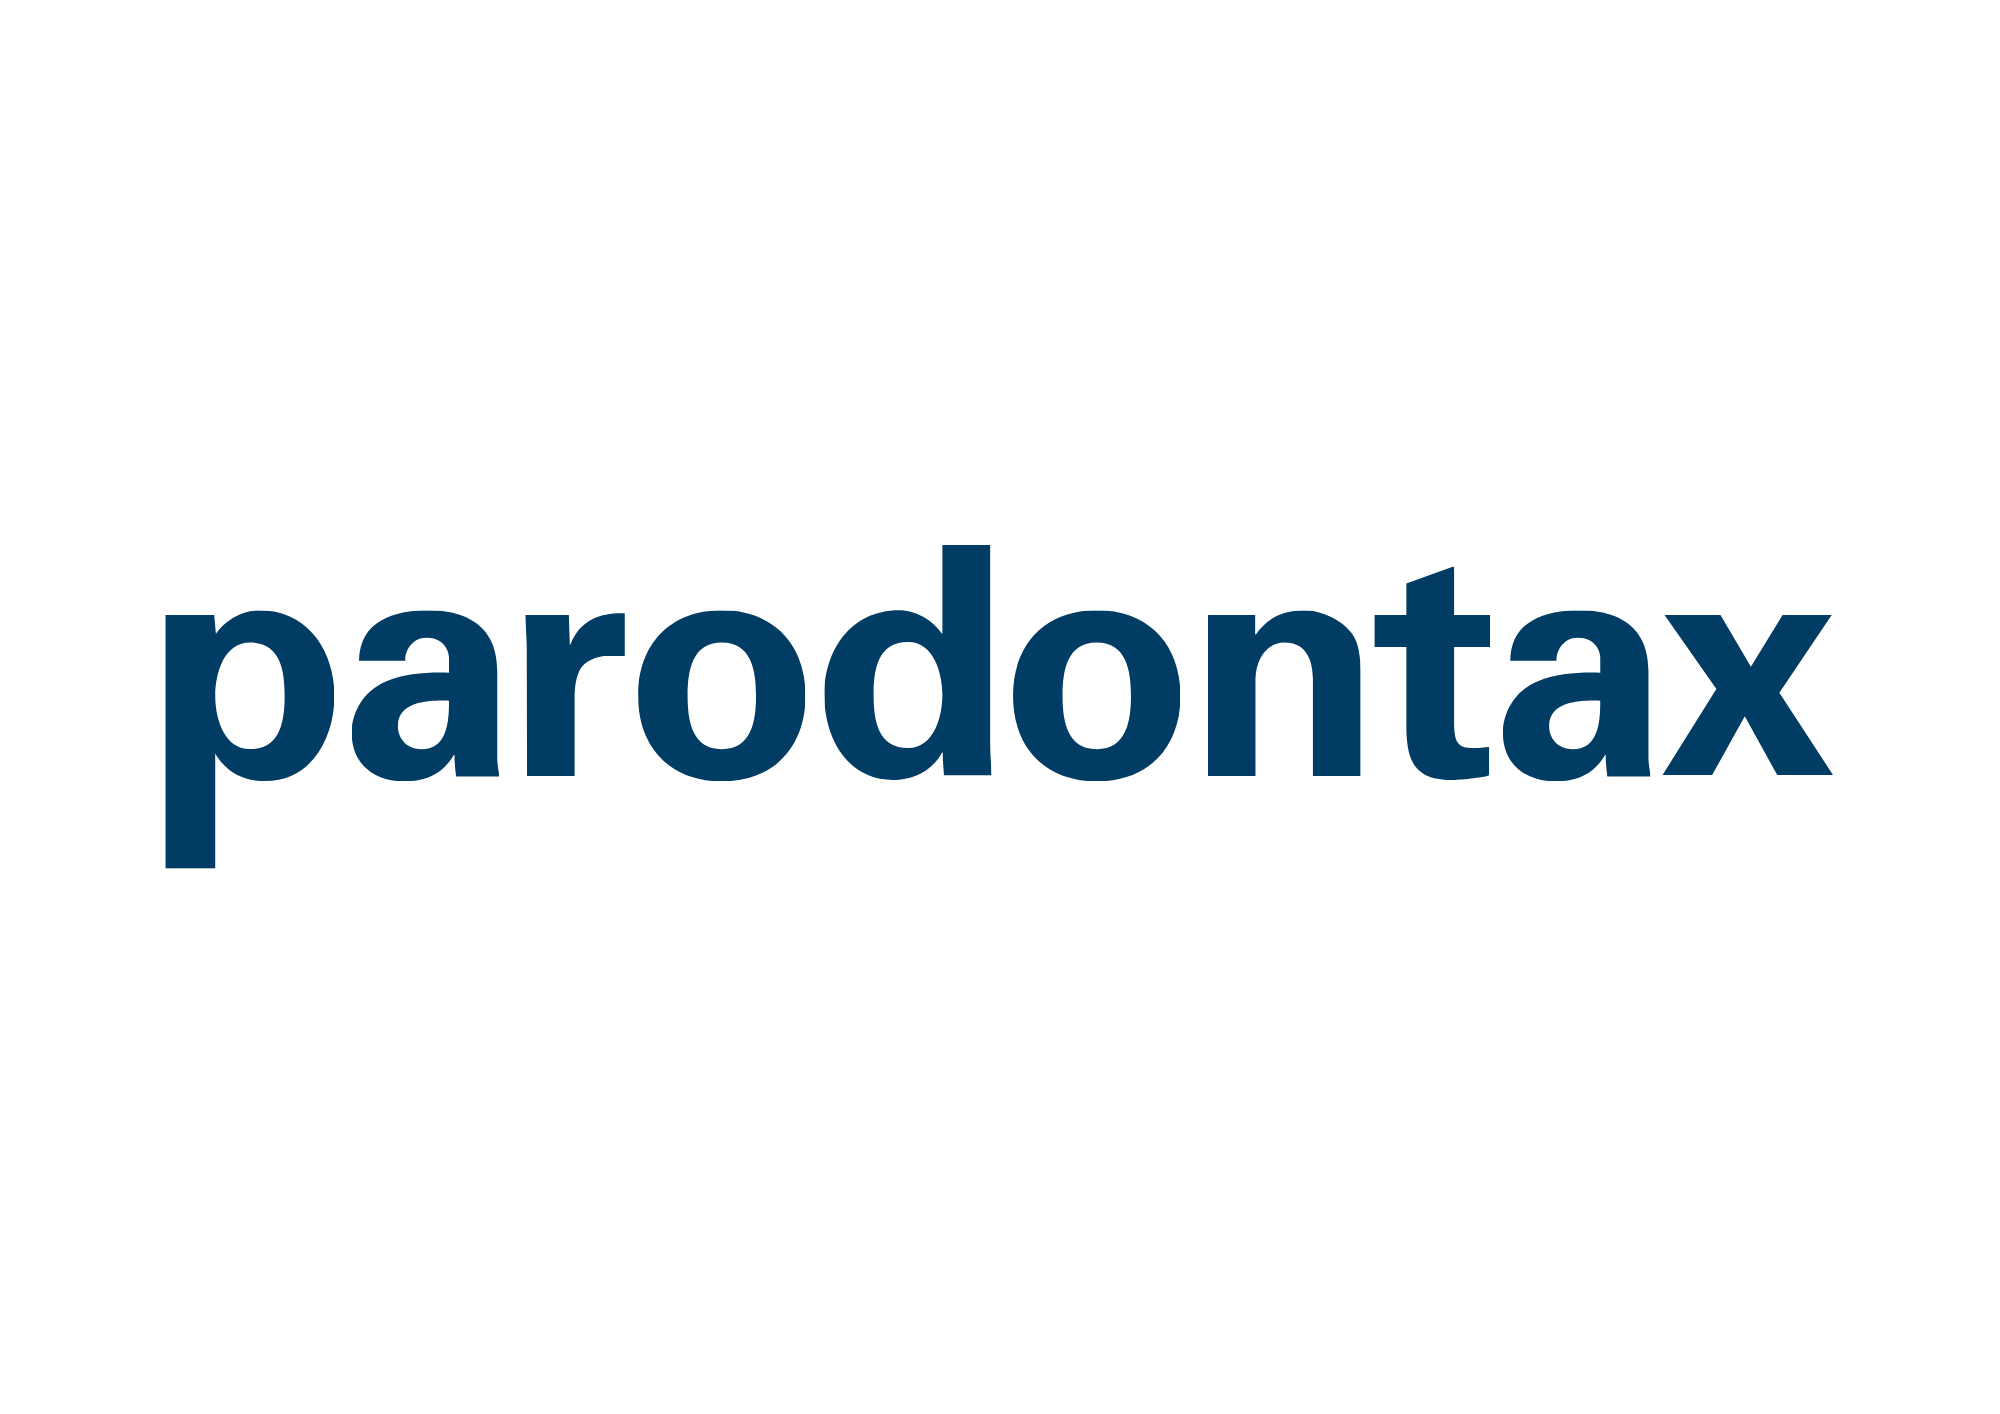 parodontax